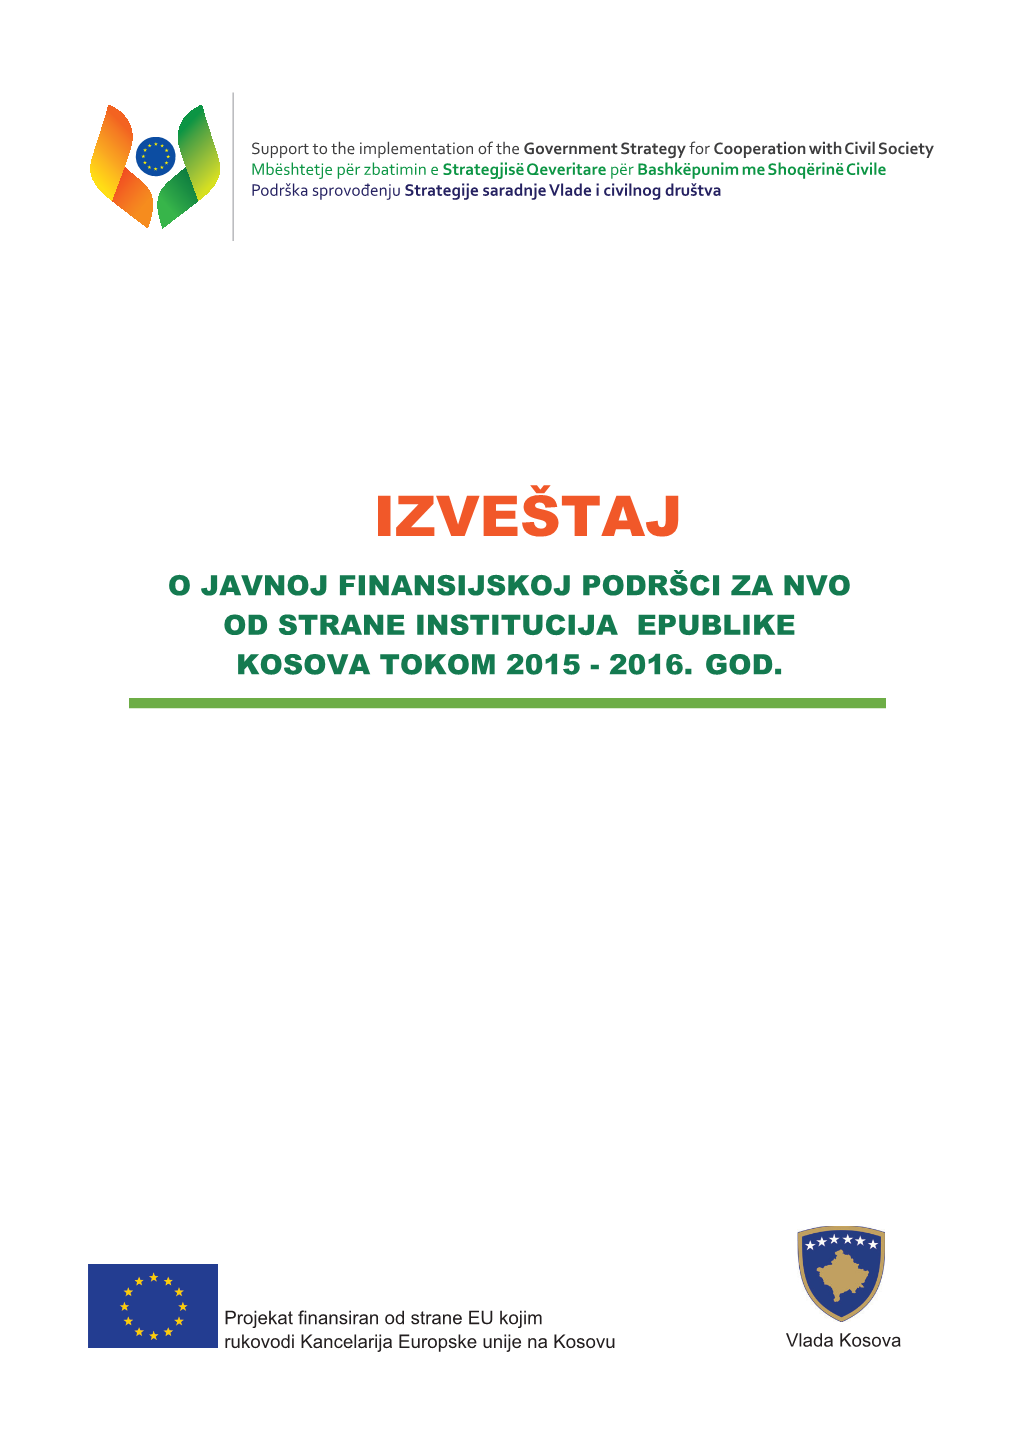 Izveštaj O Javnoj Finansijskoj Podršci Za Nvo Od Strane Institucija Epublike Kosova Tokom 2015 - 2016